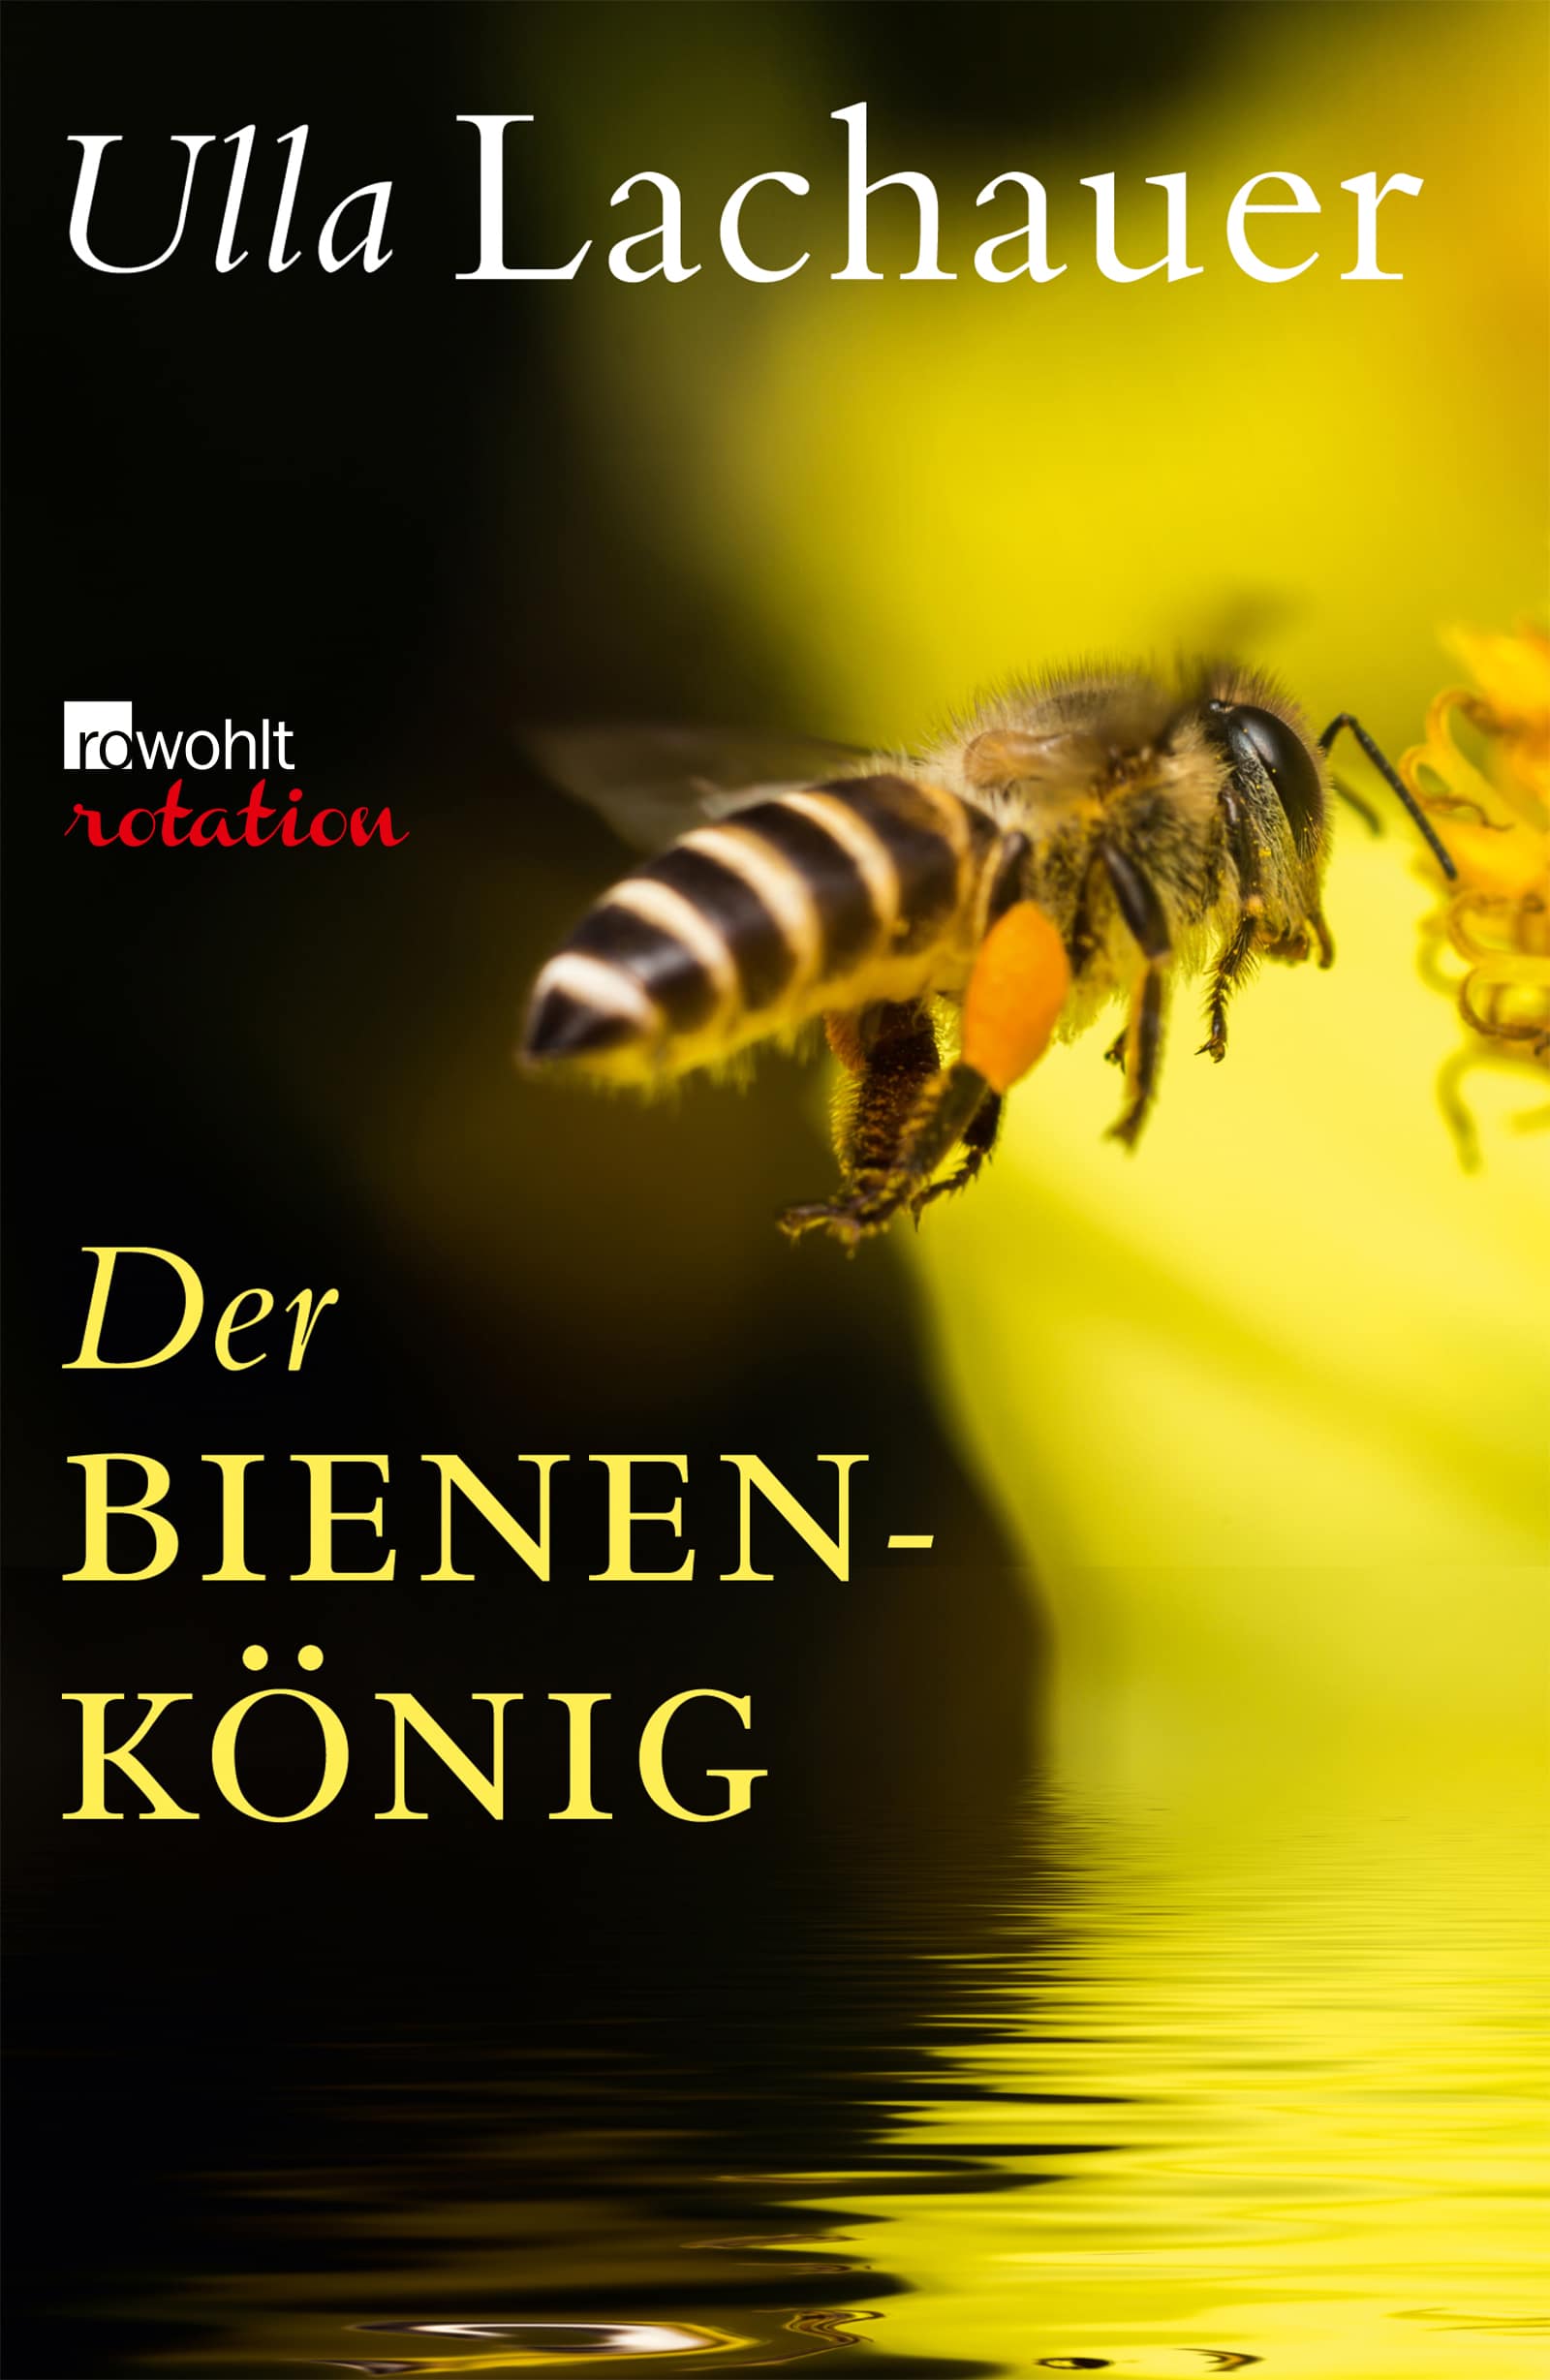 Cover des E-Book "DER BIENENKÖNIG"